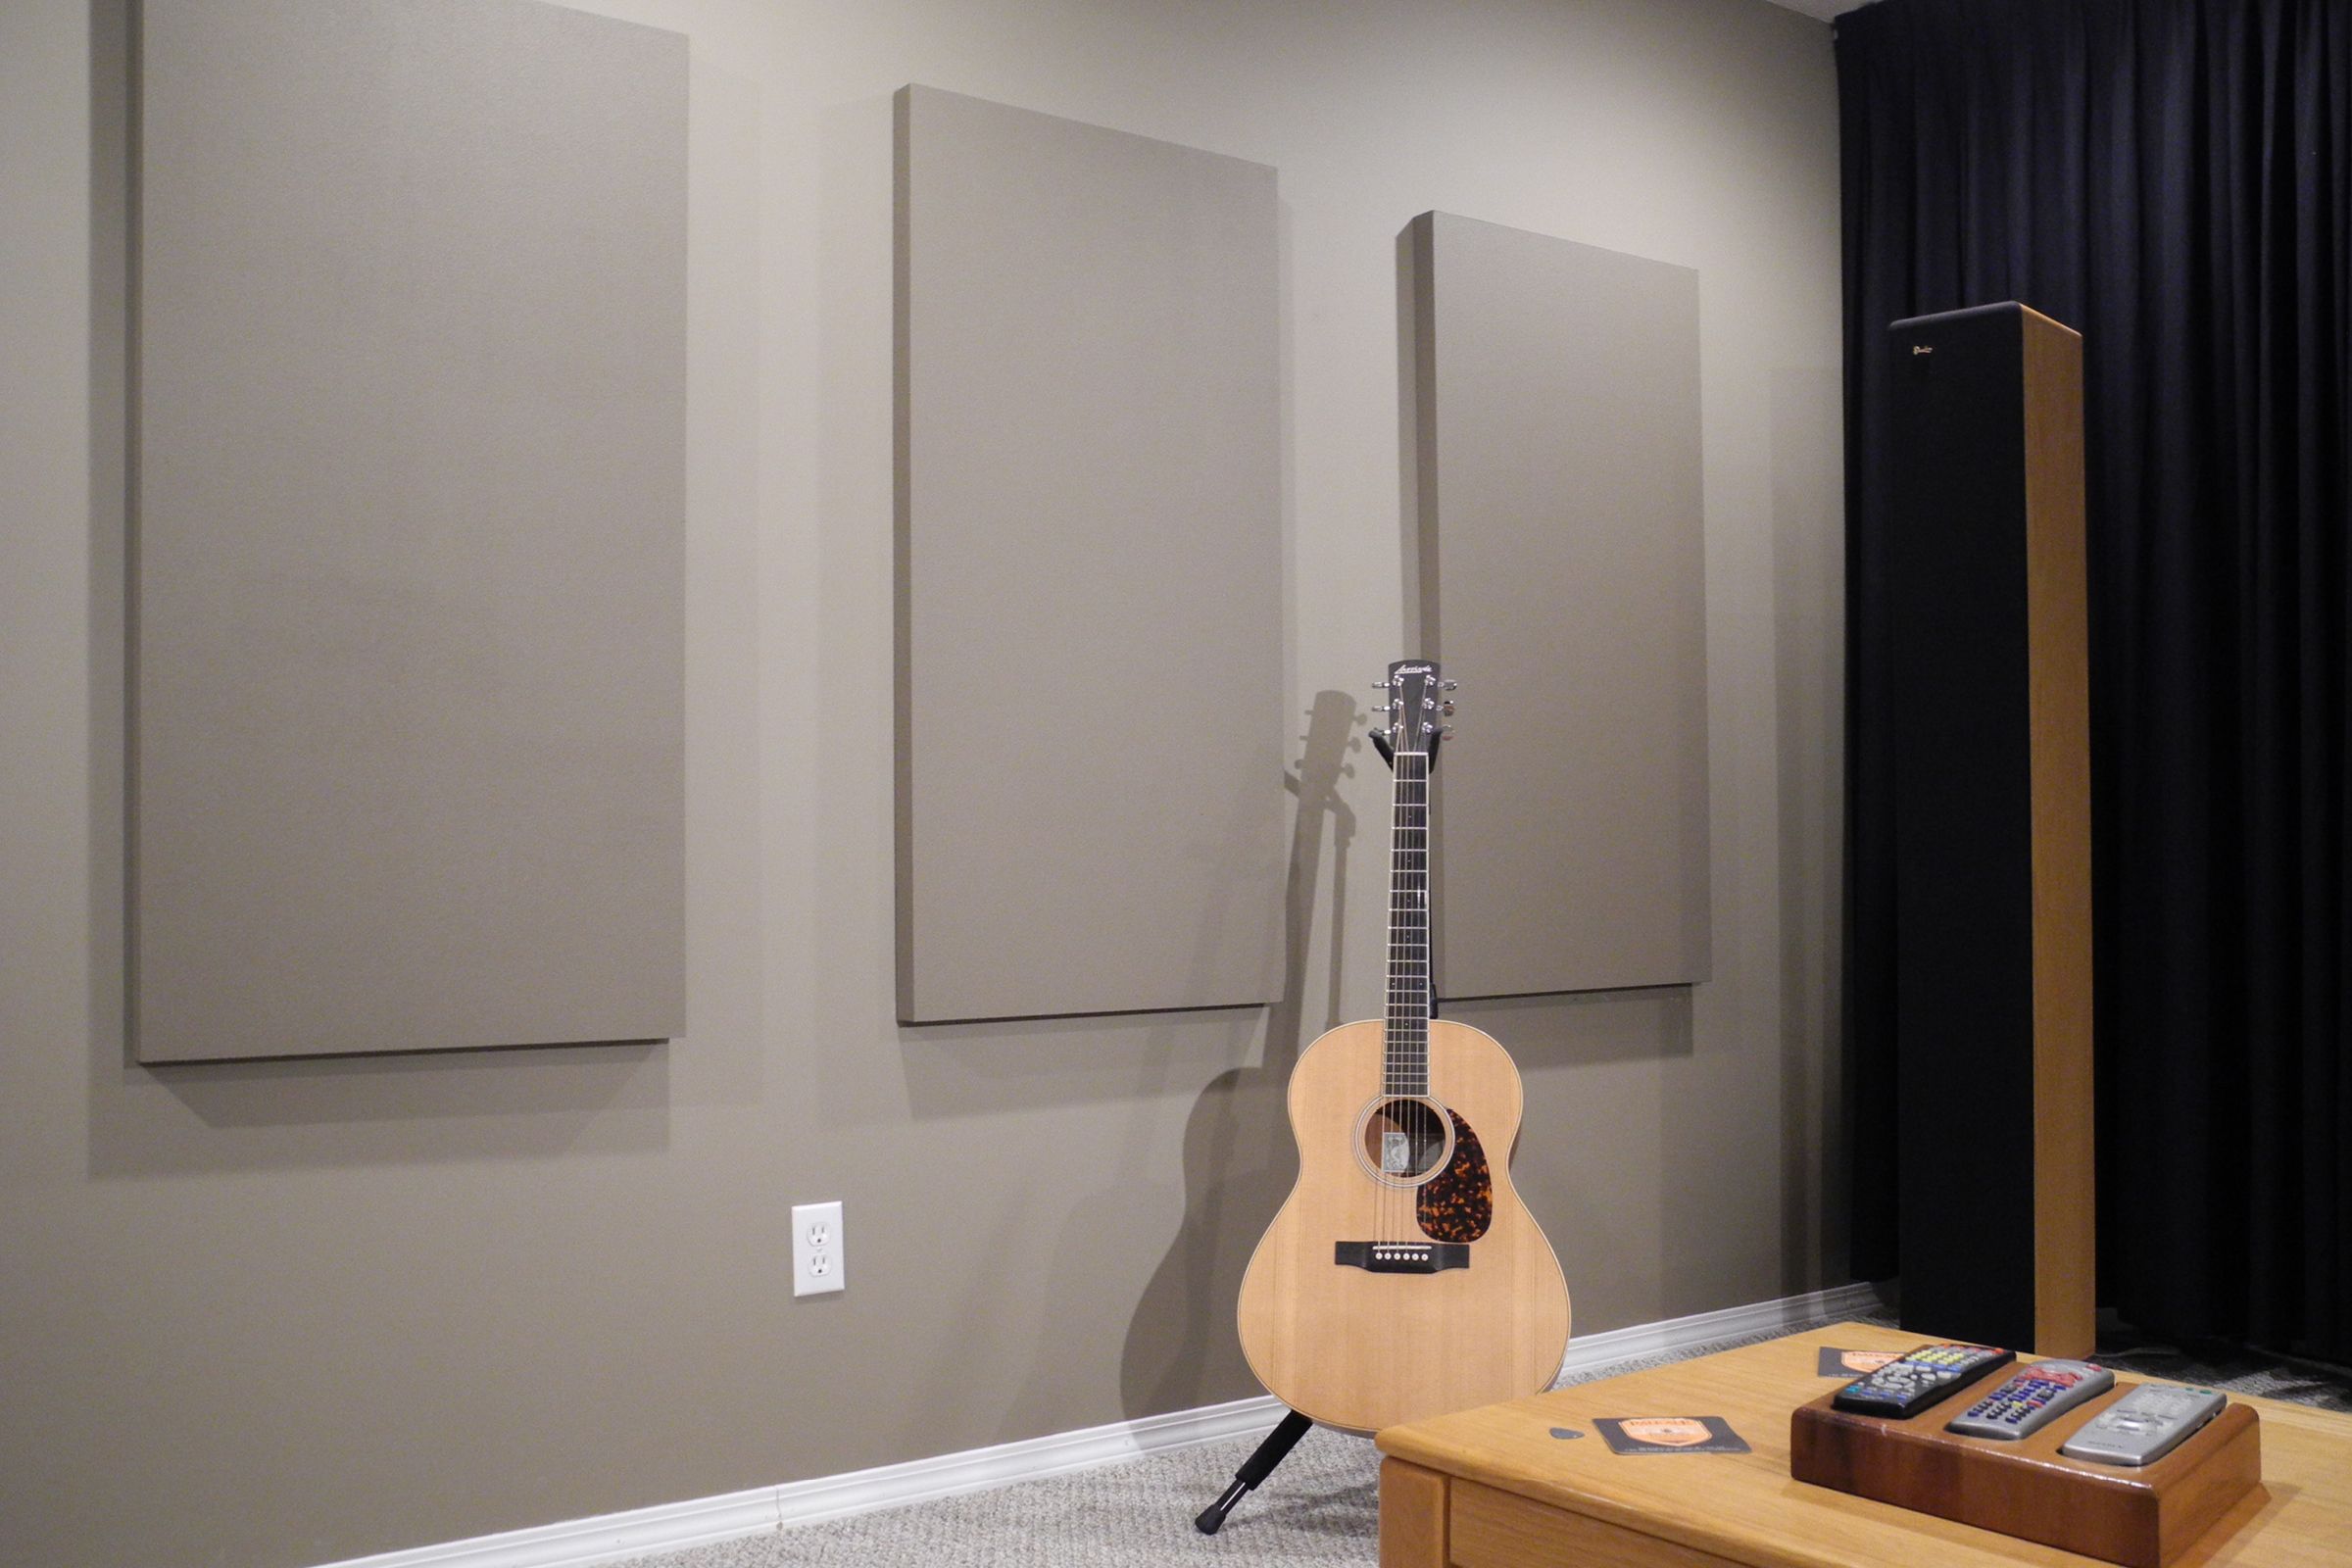 How Many Acoustic Panels Do I Need